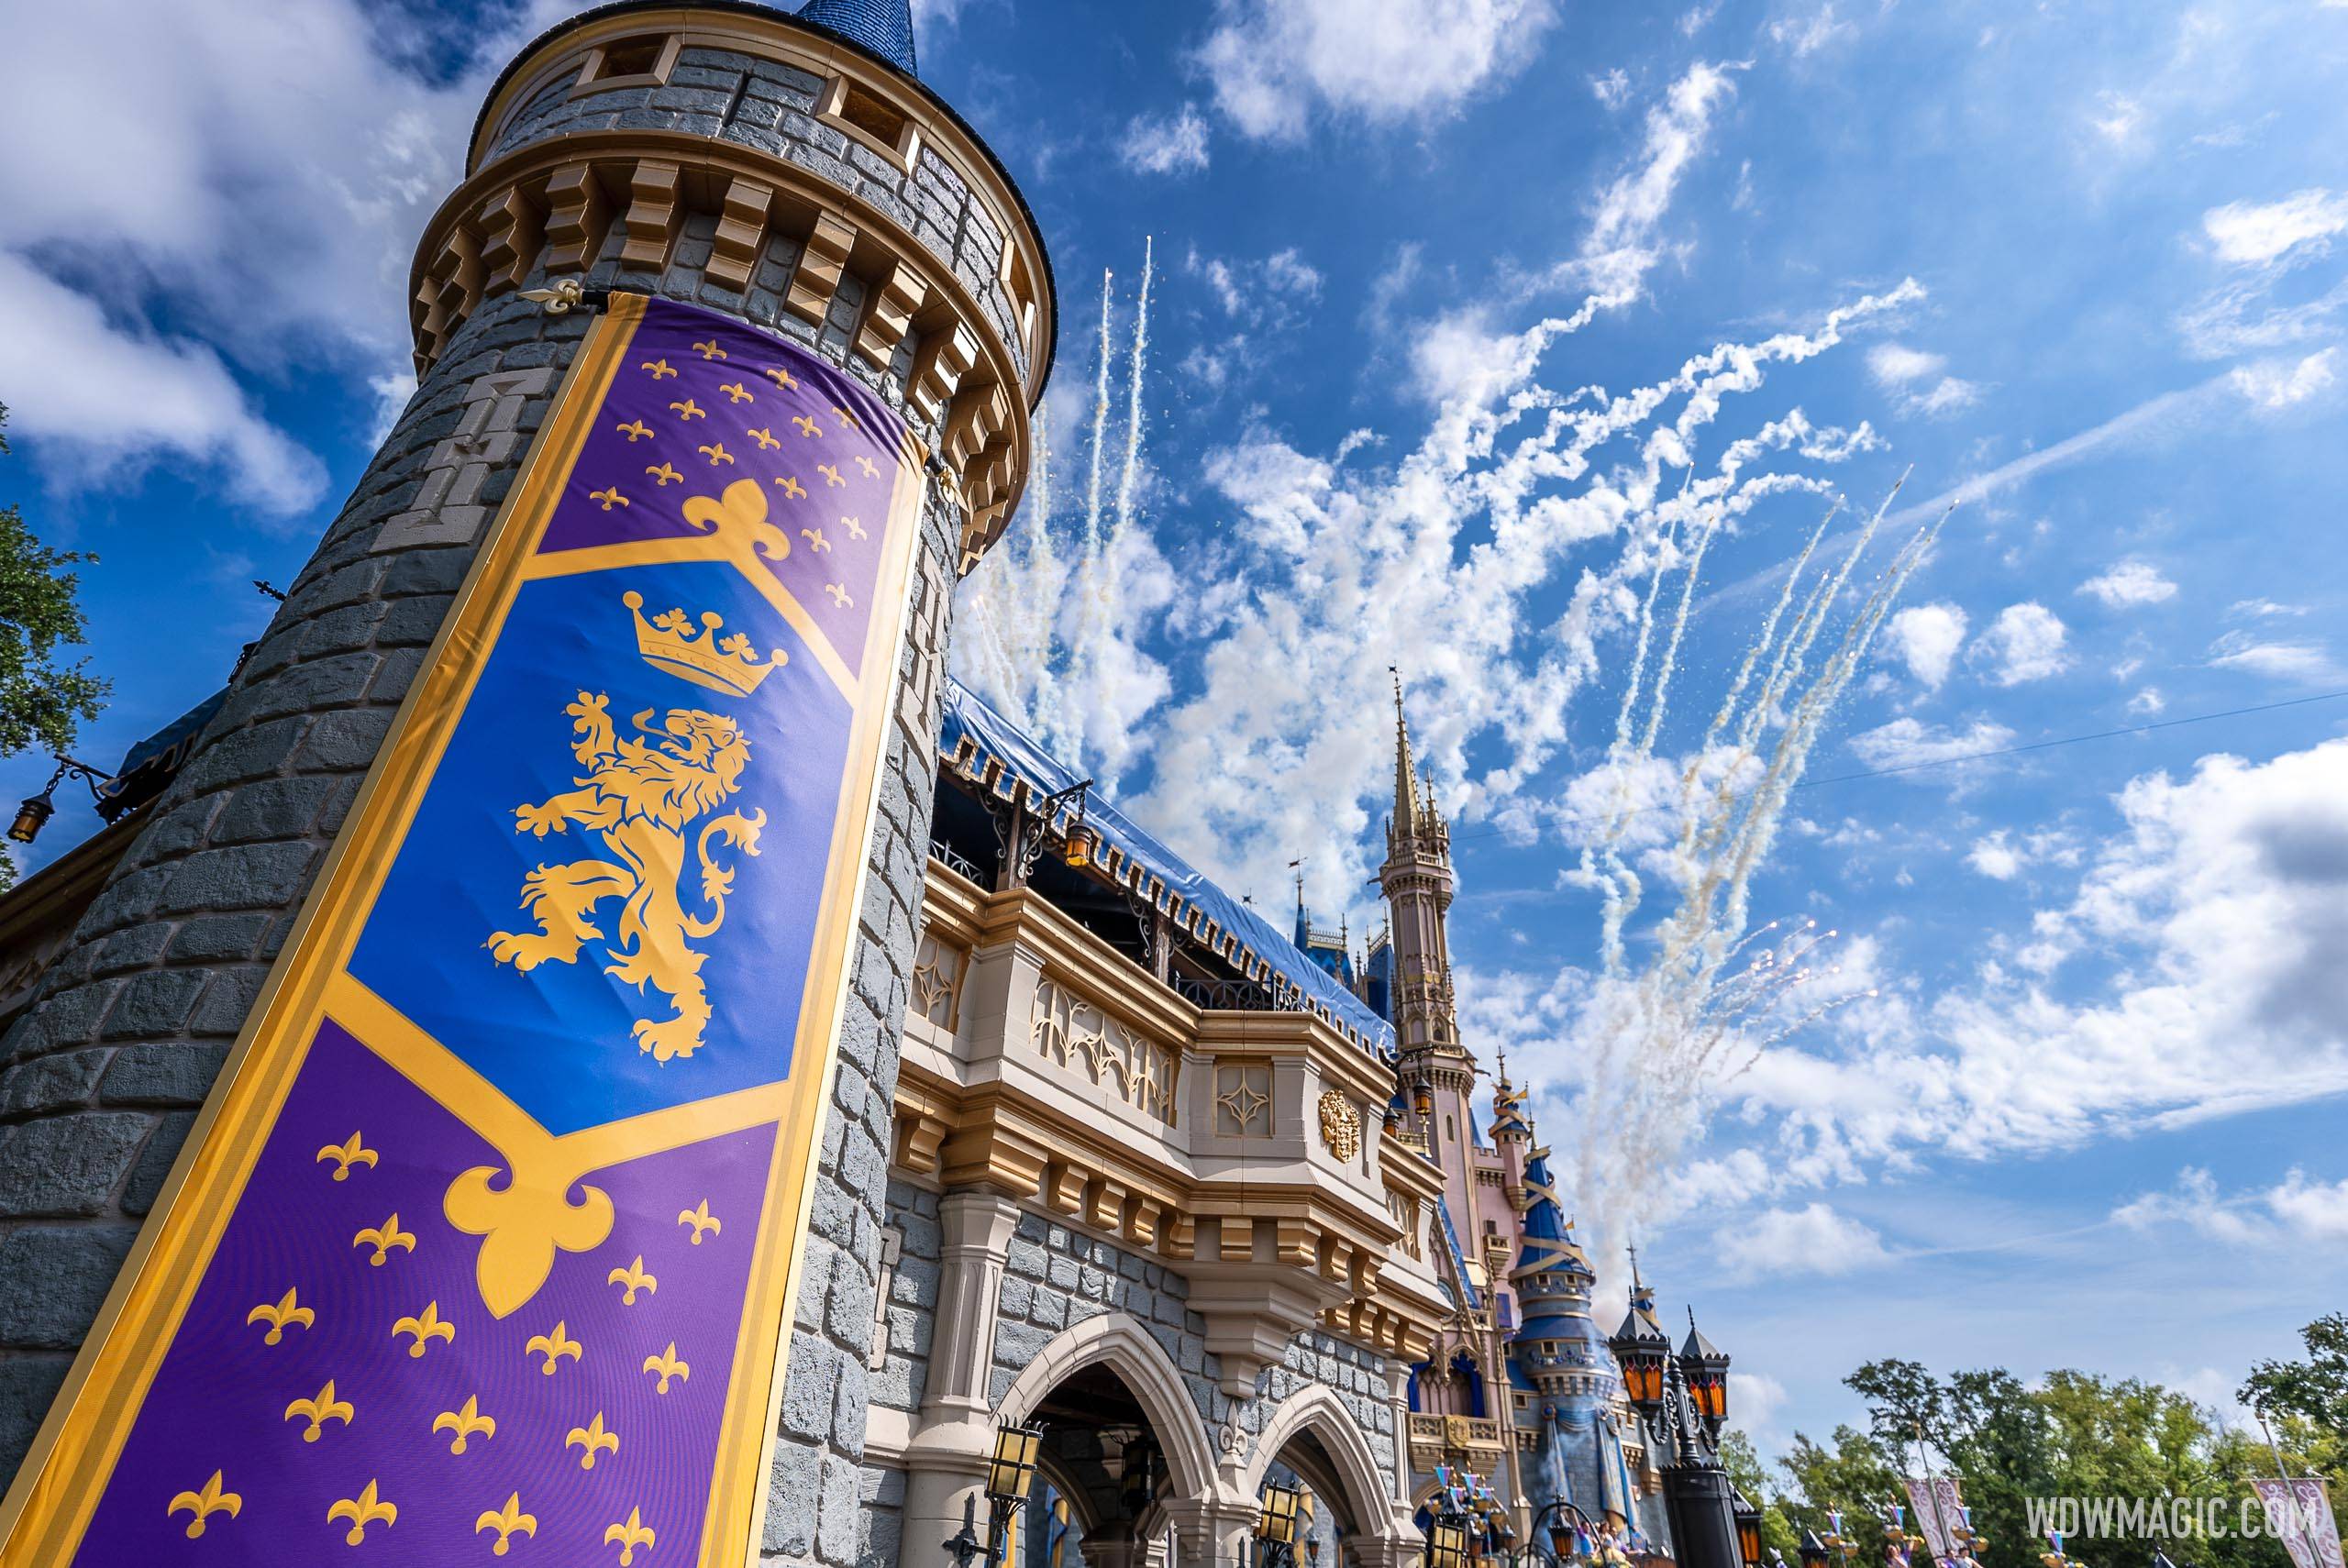 Cinderella Castle turret banners return to pre-50th anniversary design